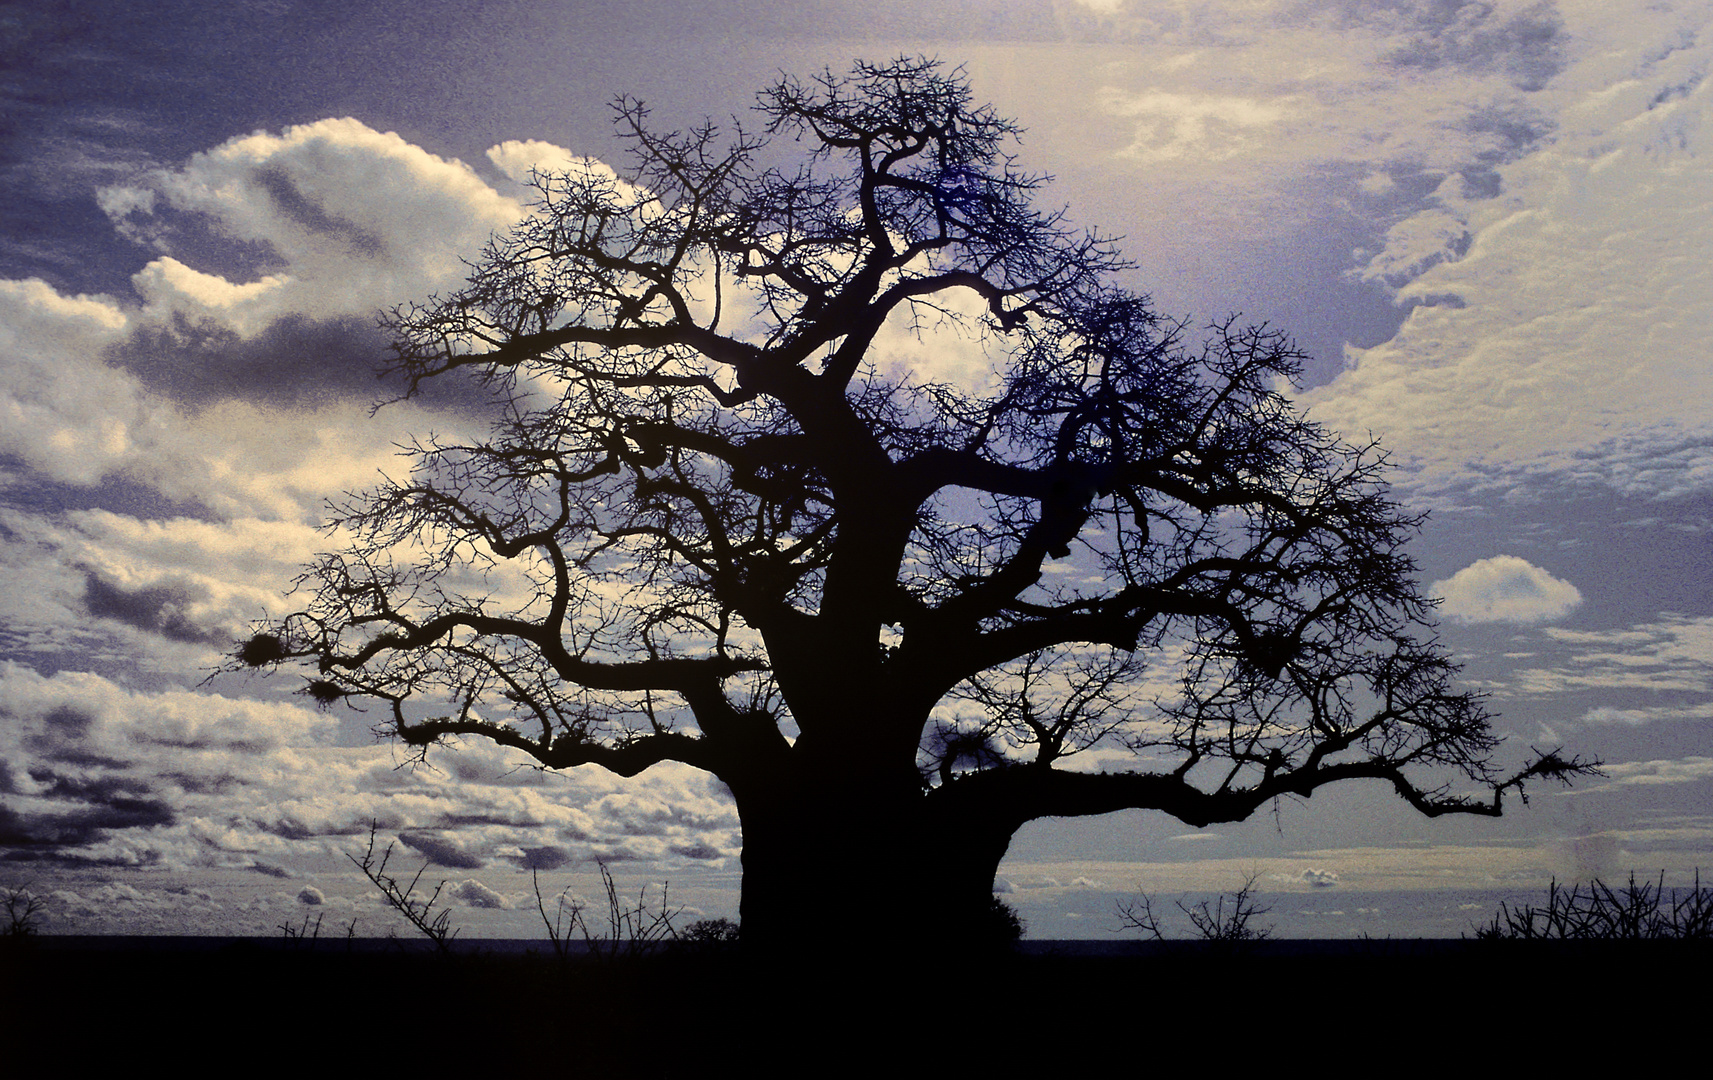 Baoba oder Affenbrotbaum